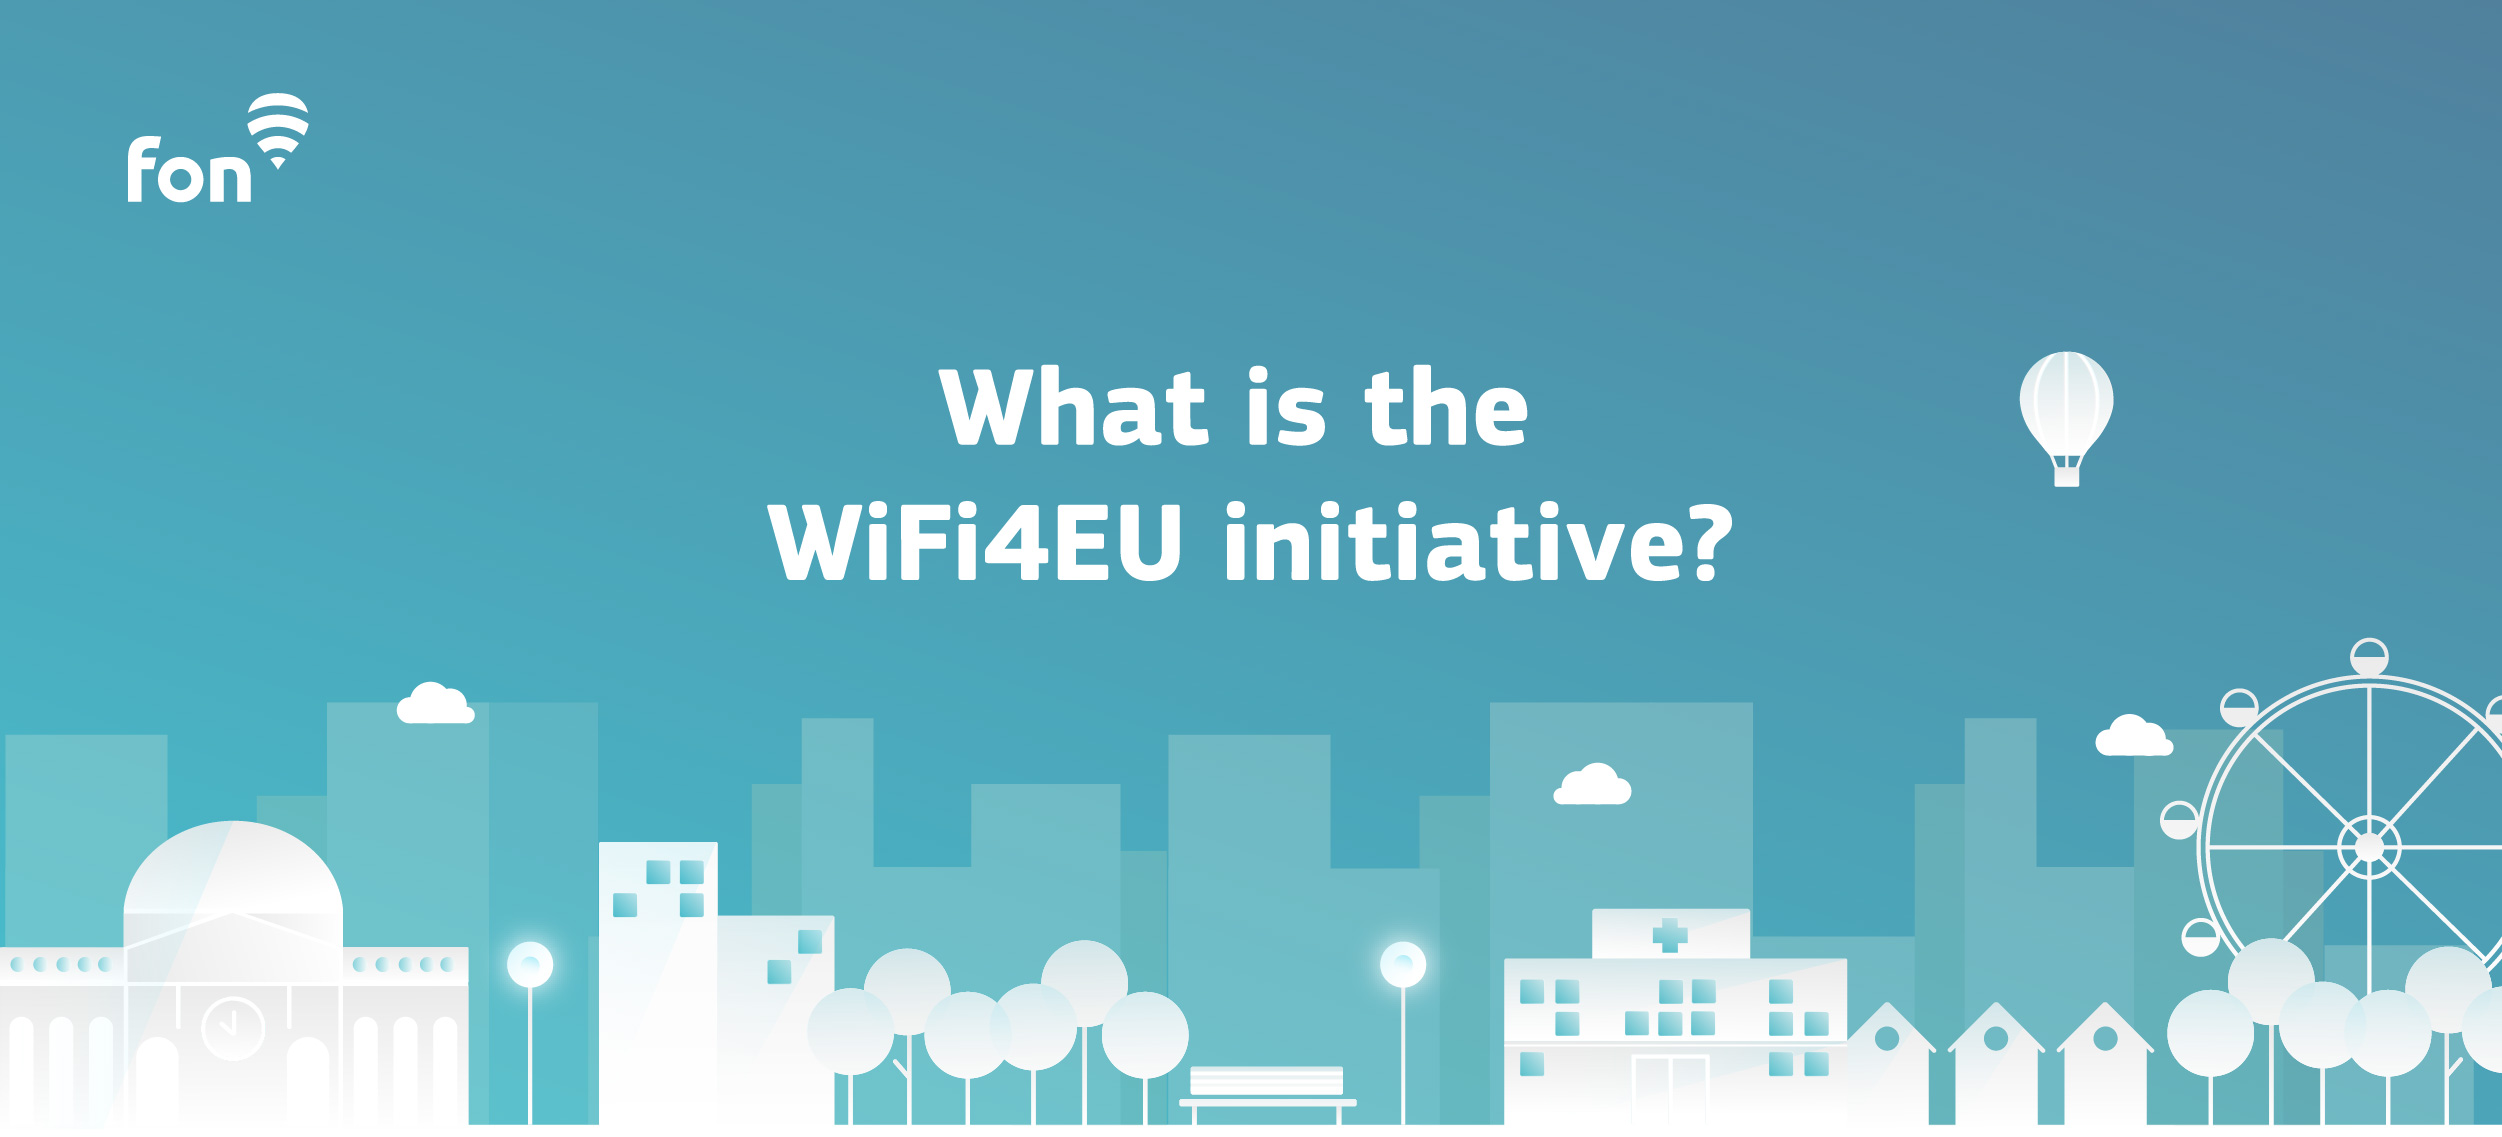 WiFi4EU, ofensivă a UE pentru o oferir internet gratuit tuturor cetățenilor săi